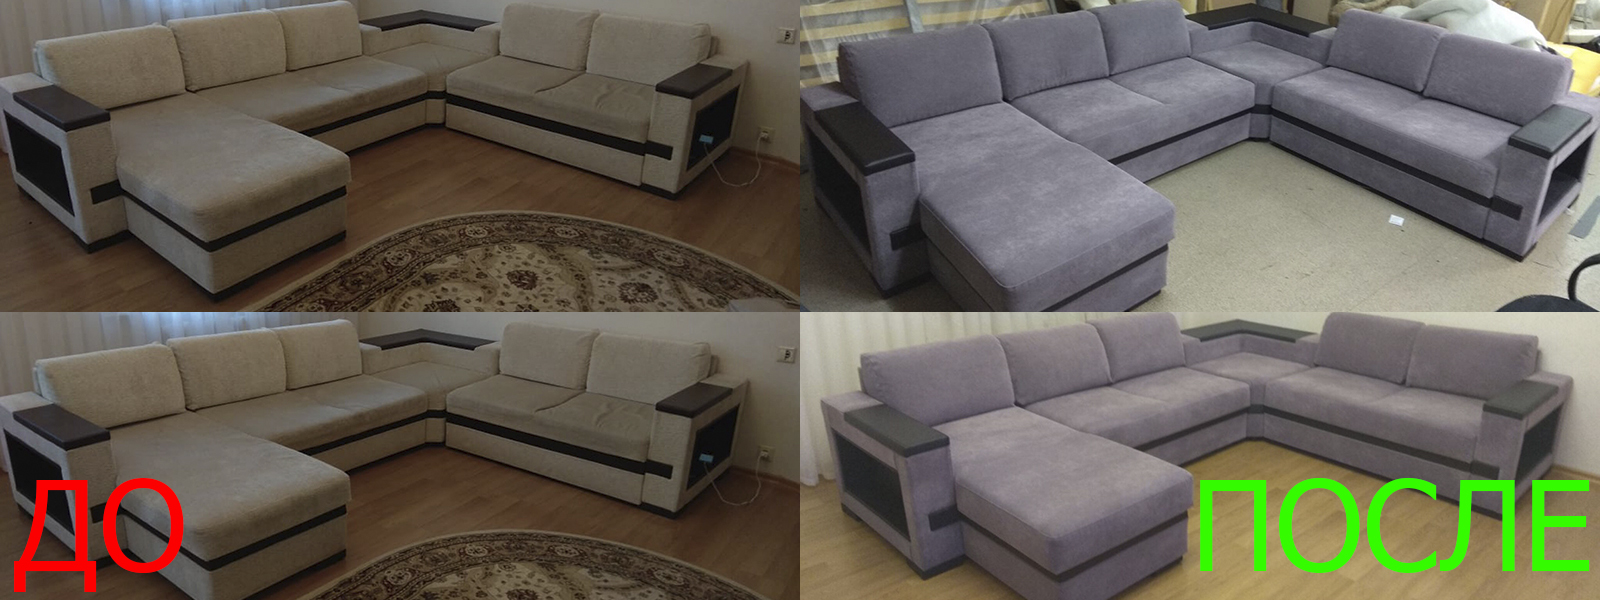 Обтяжка мебели на дому в Керчи недорого по адекватной цене